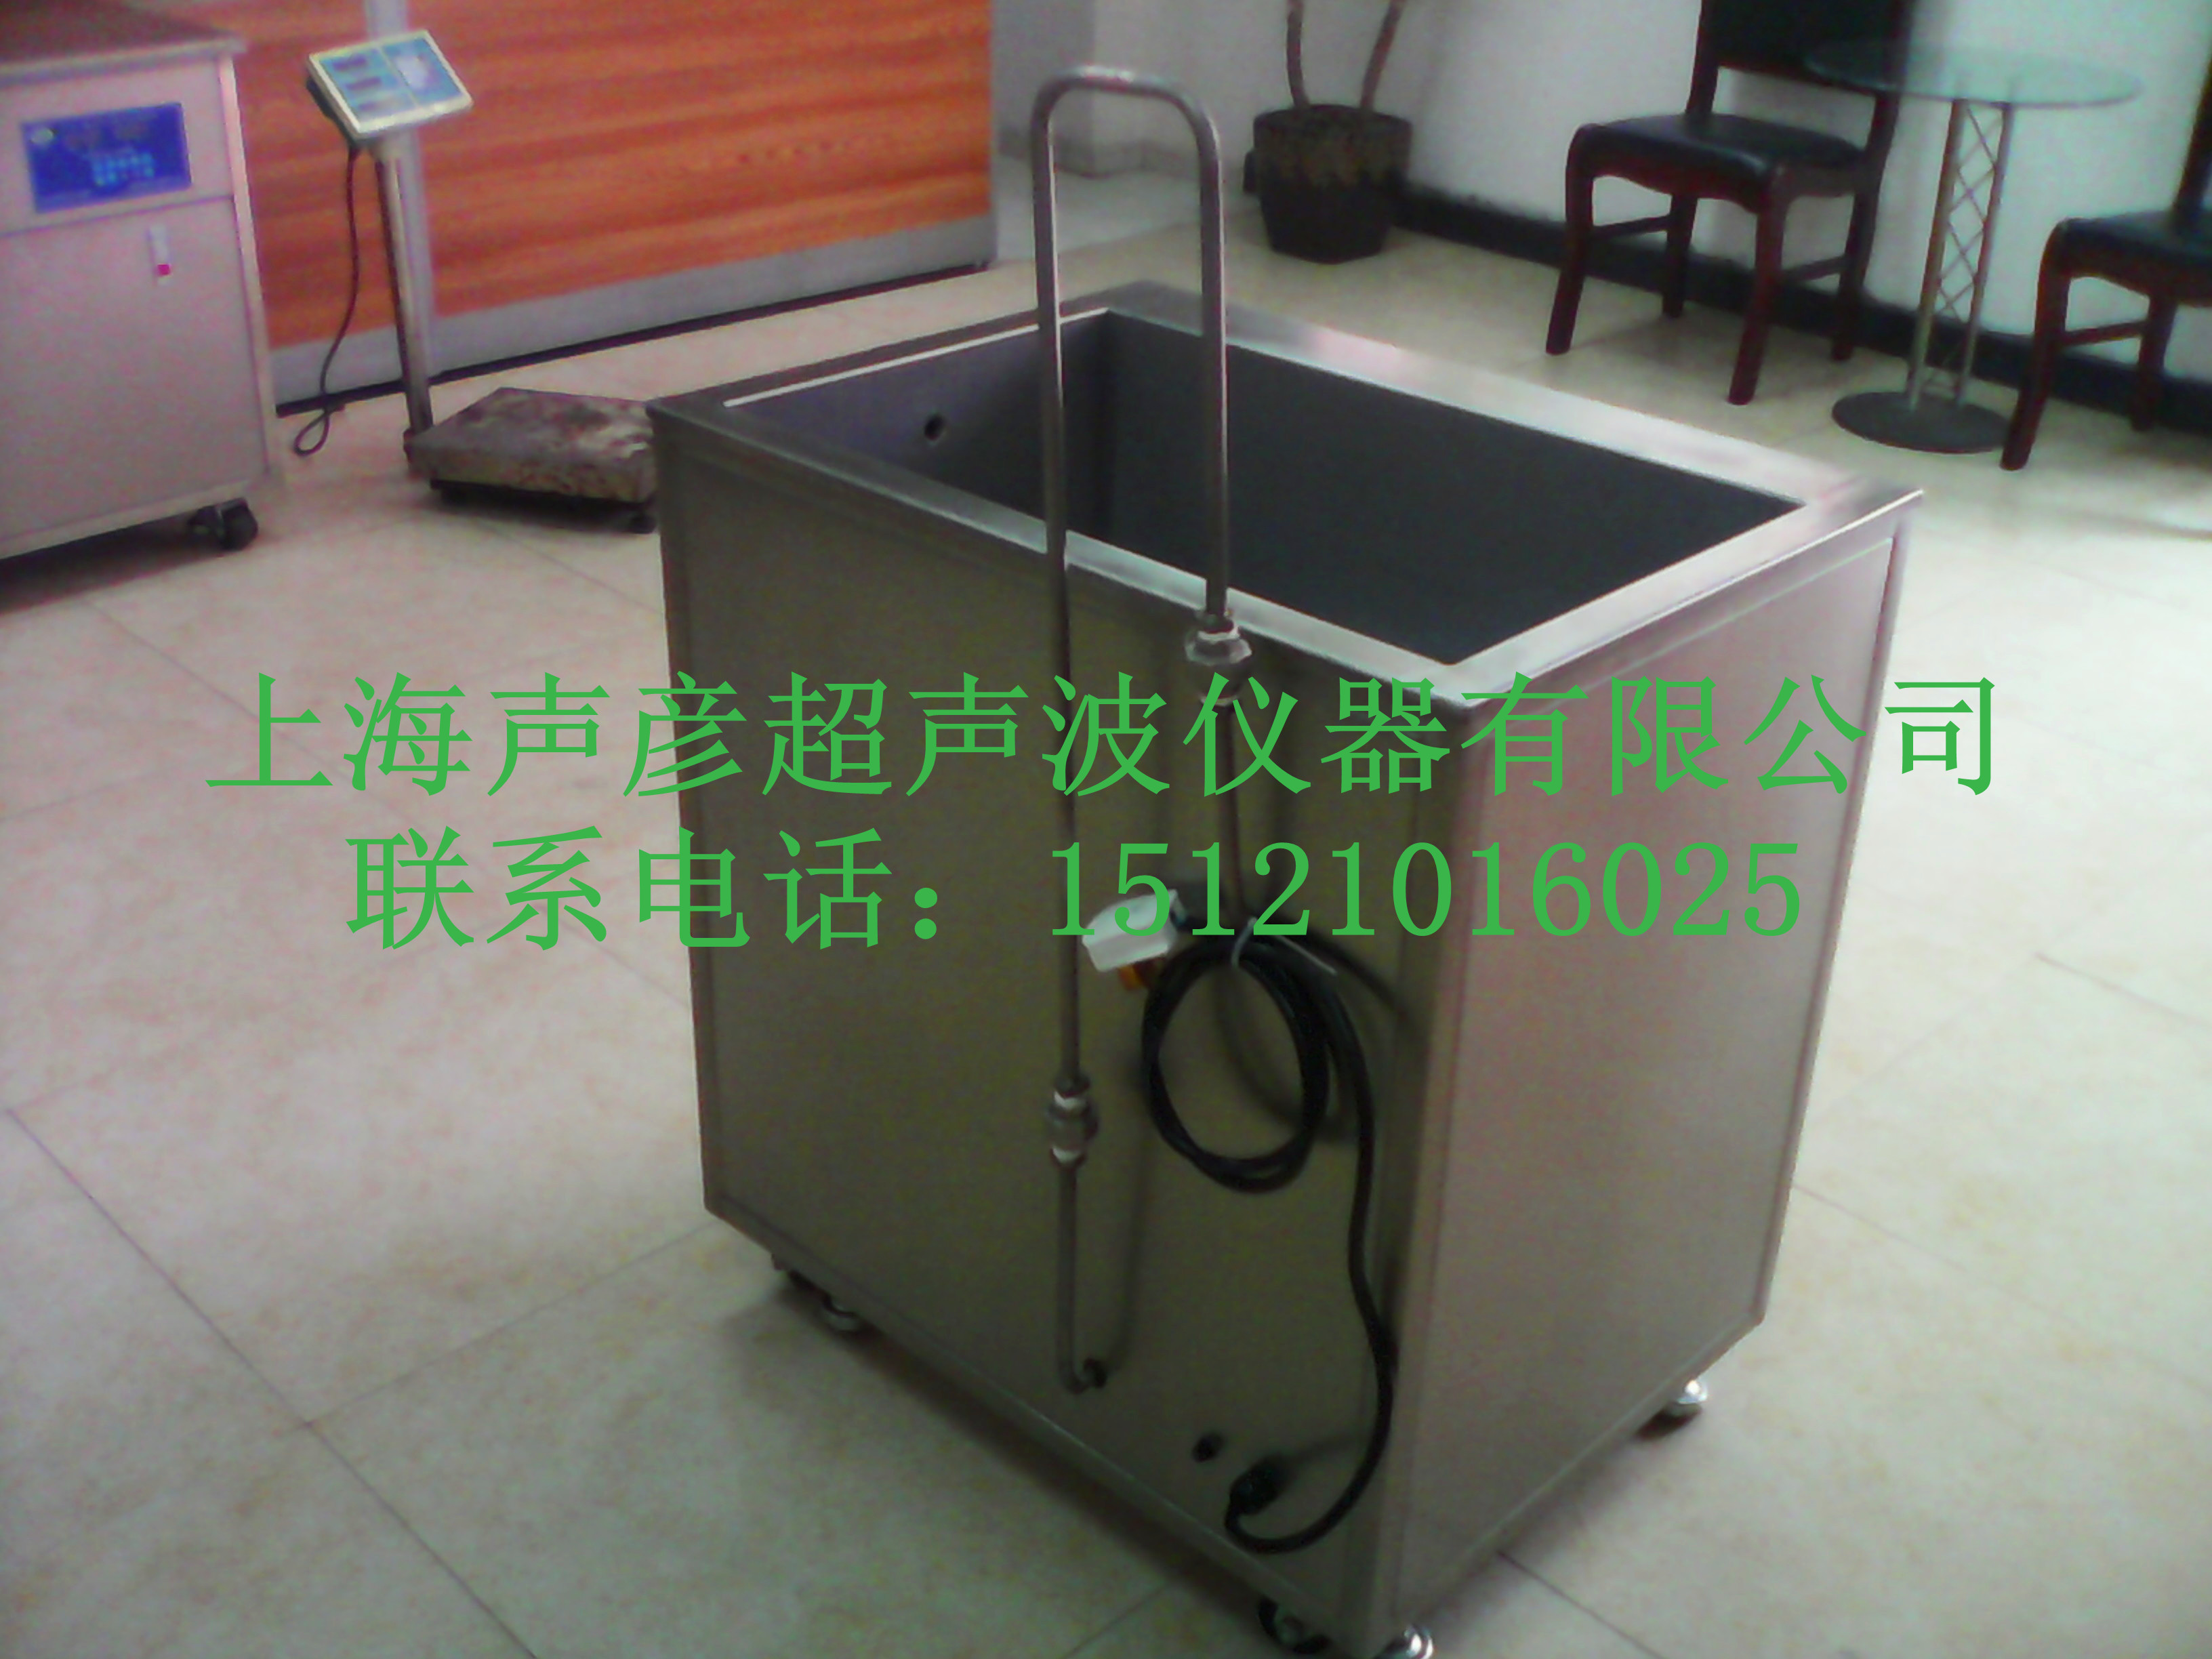 声彦臭氧消毒超声波清洗机SCQ-1001B-1上海声彦超声波仪器有限公司